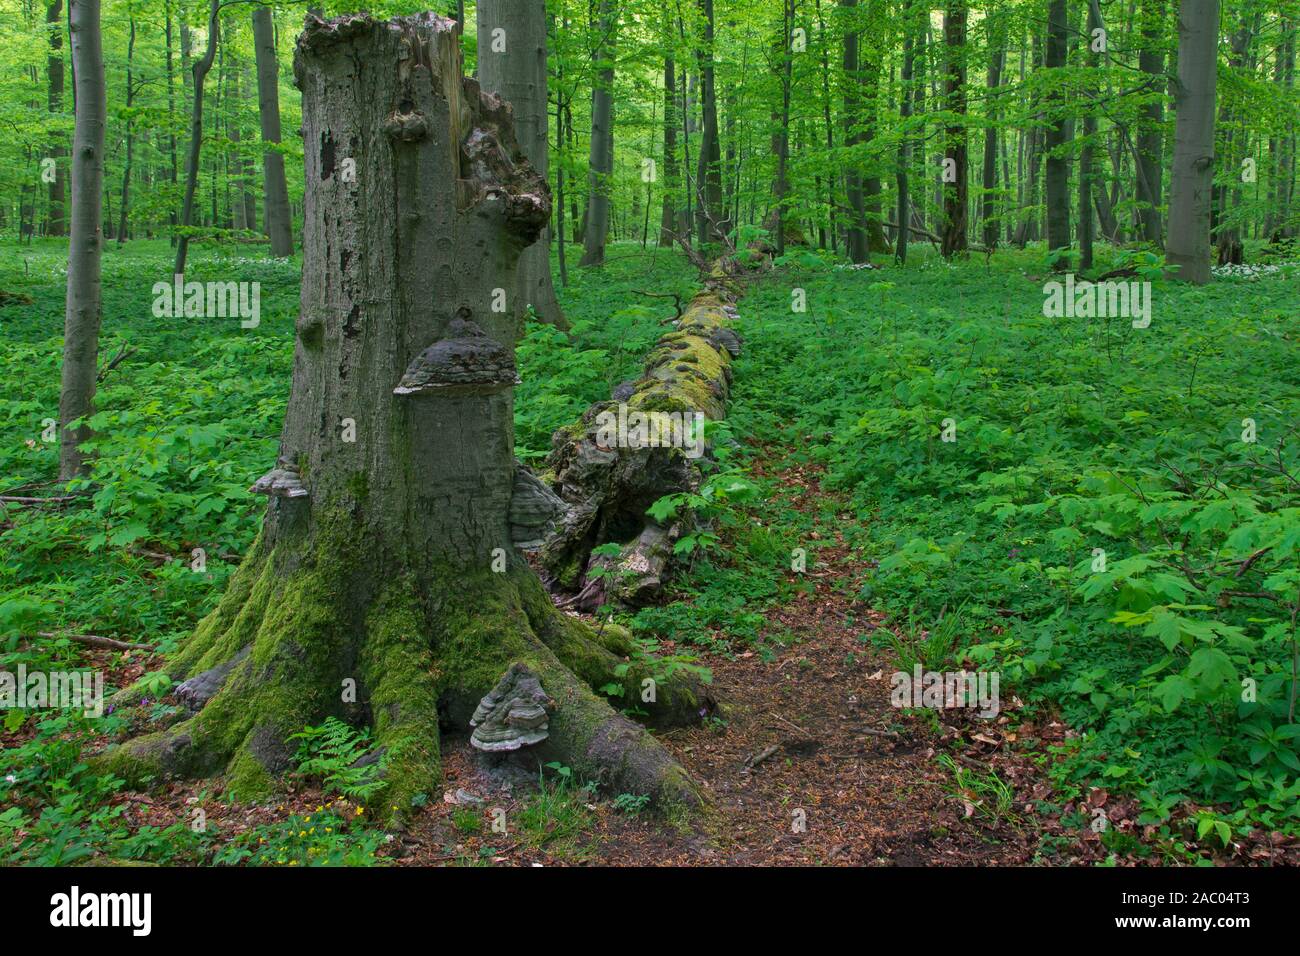 Hêtre mort tronc de l'arbre infecté par faux Amadou / champignon champignon sabot / Amadou conk, Parc national du Hainich, Thuringe / Thüringen, Allemagne Banque D'Images